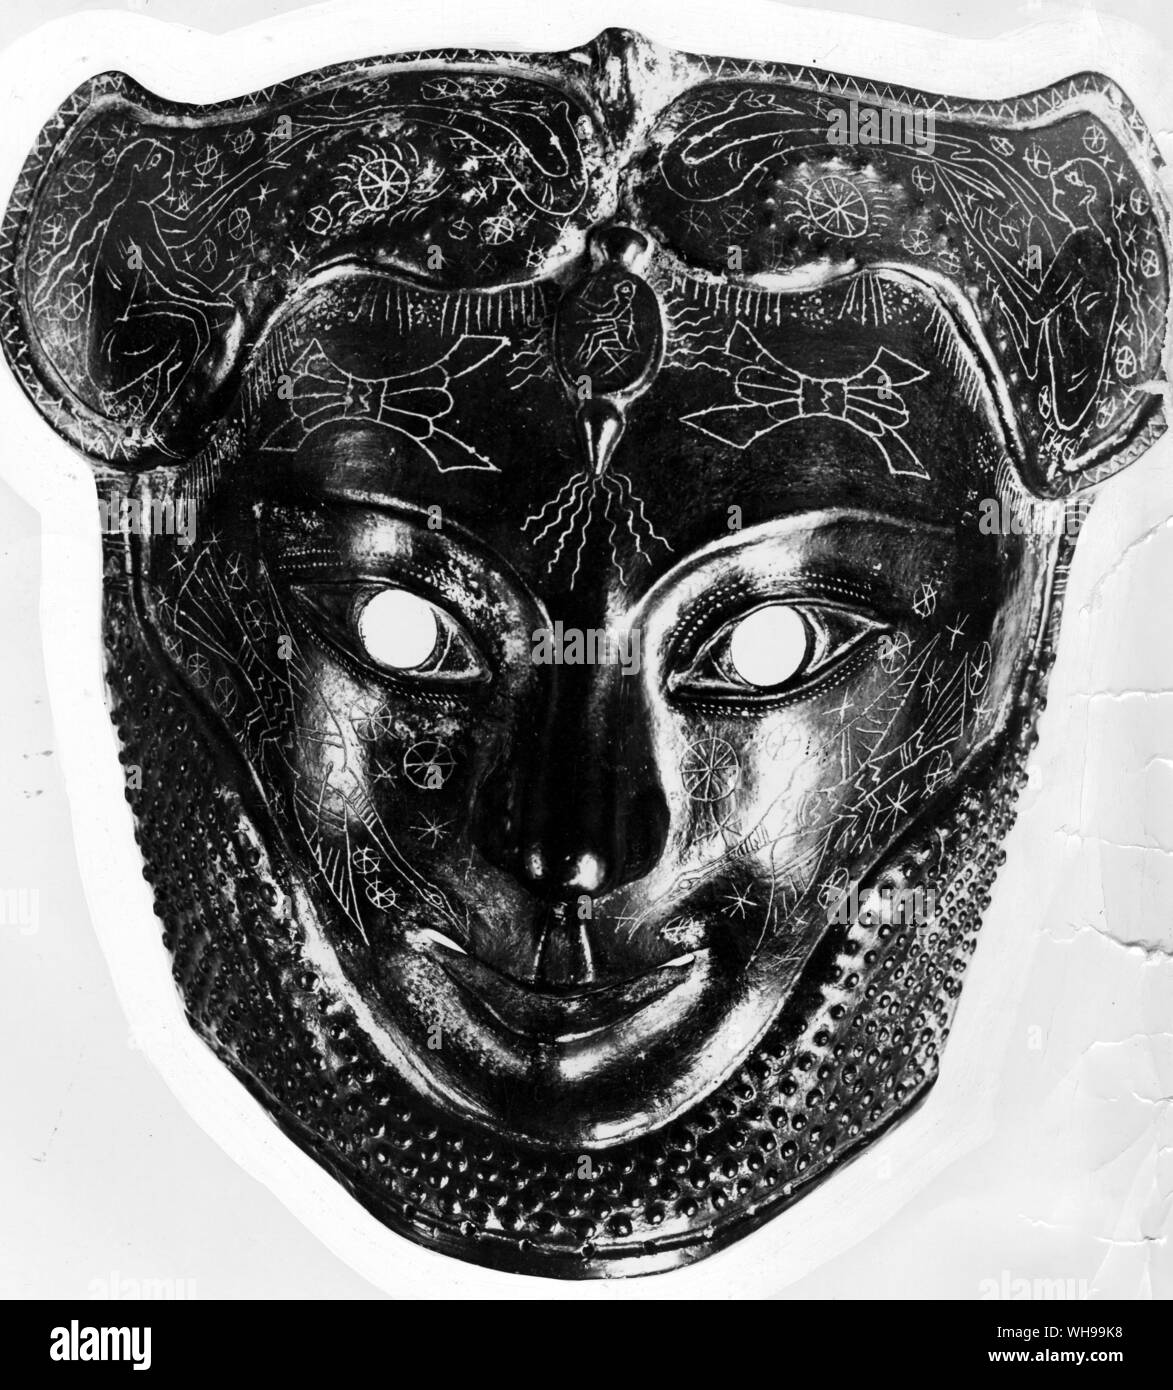 Silber Maske mit stilisierten Figuren der Vögel und Cabalistic Zeichen, die es über das Gesicht einer Leiche in einem etruskischen Grab gefunden wurde eingraviert Stockfoto